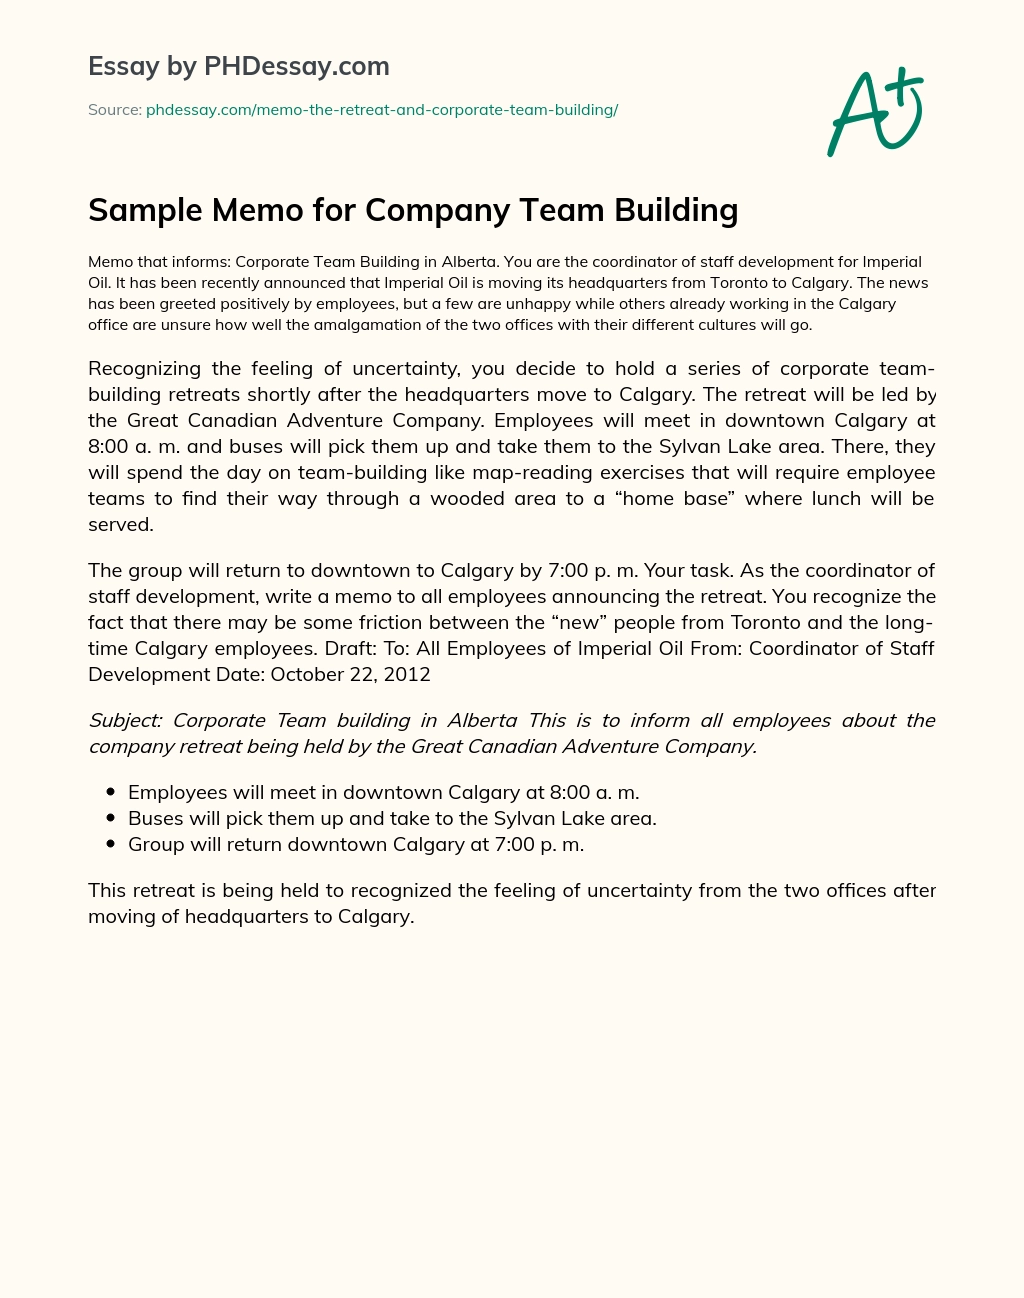 Sample Memo for Company Team Building essay